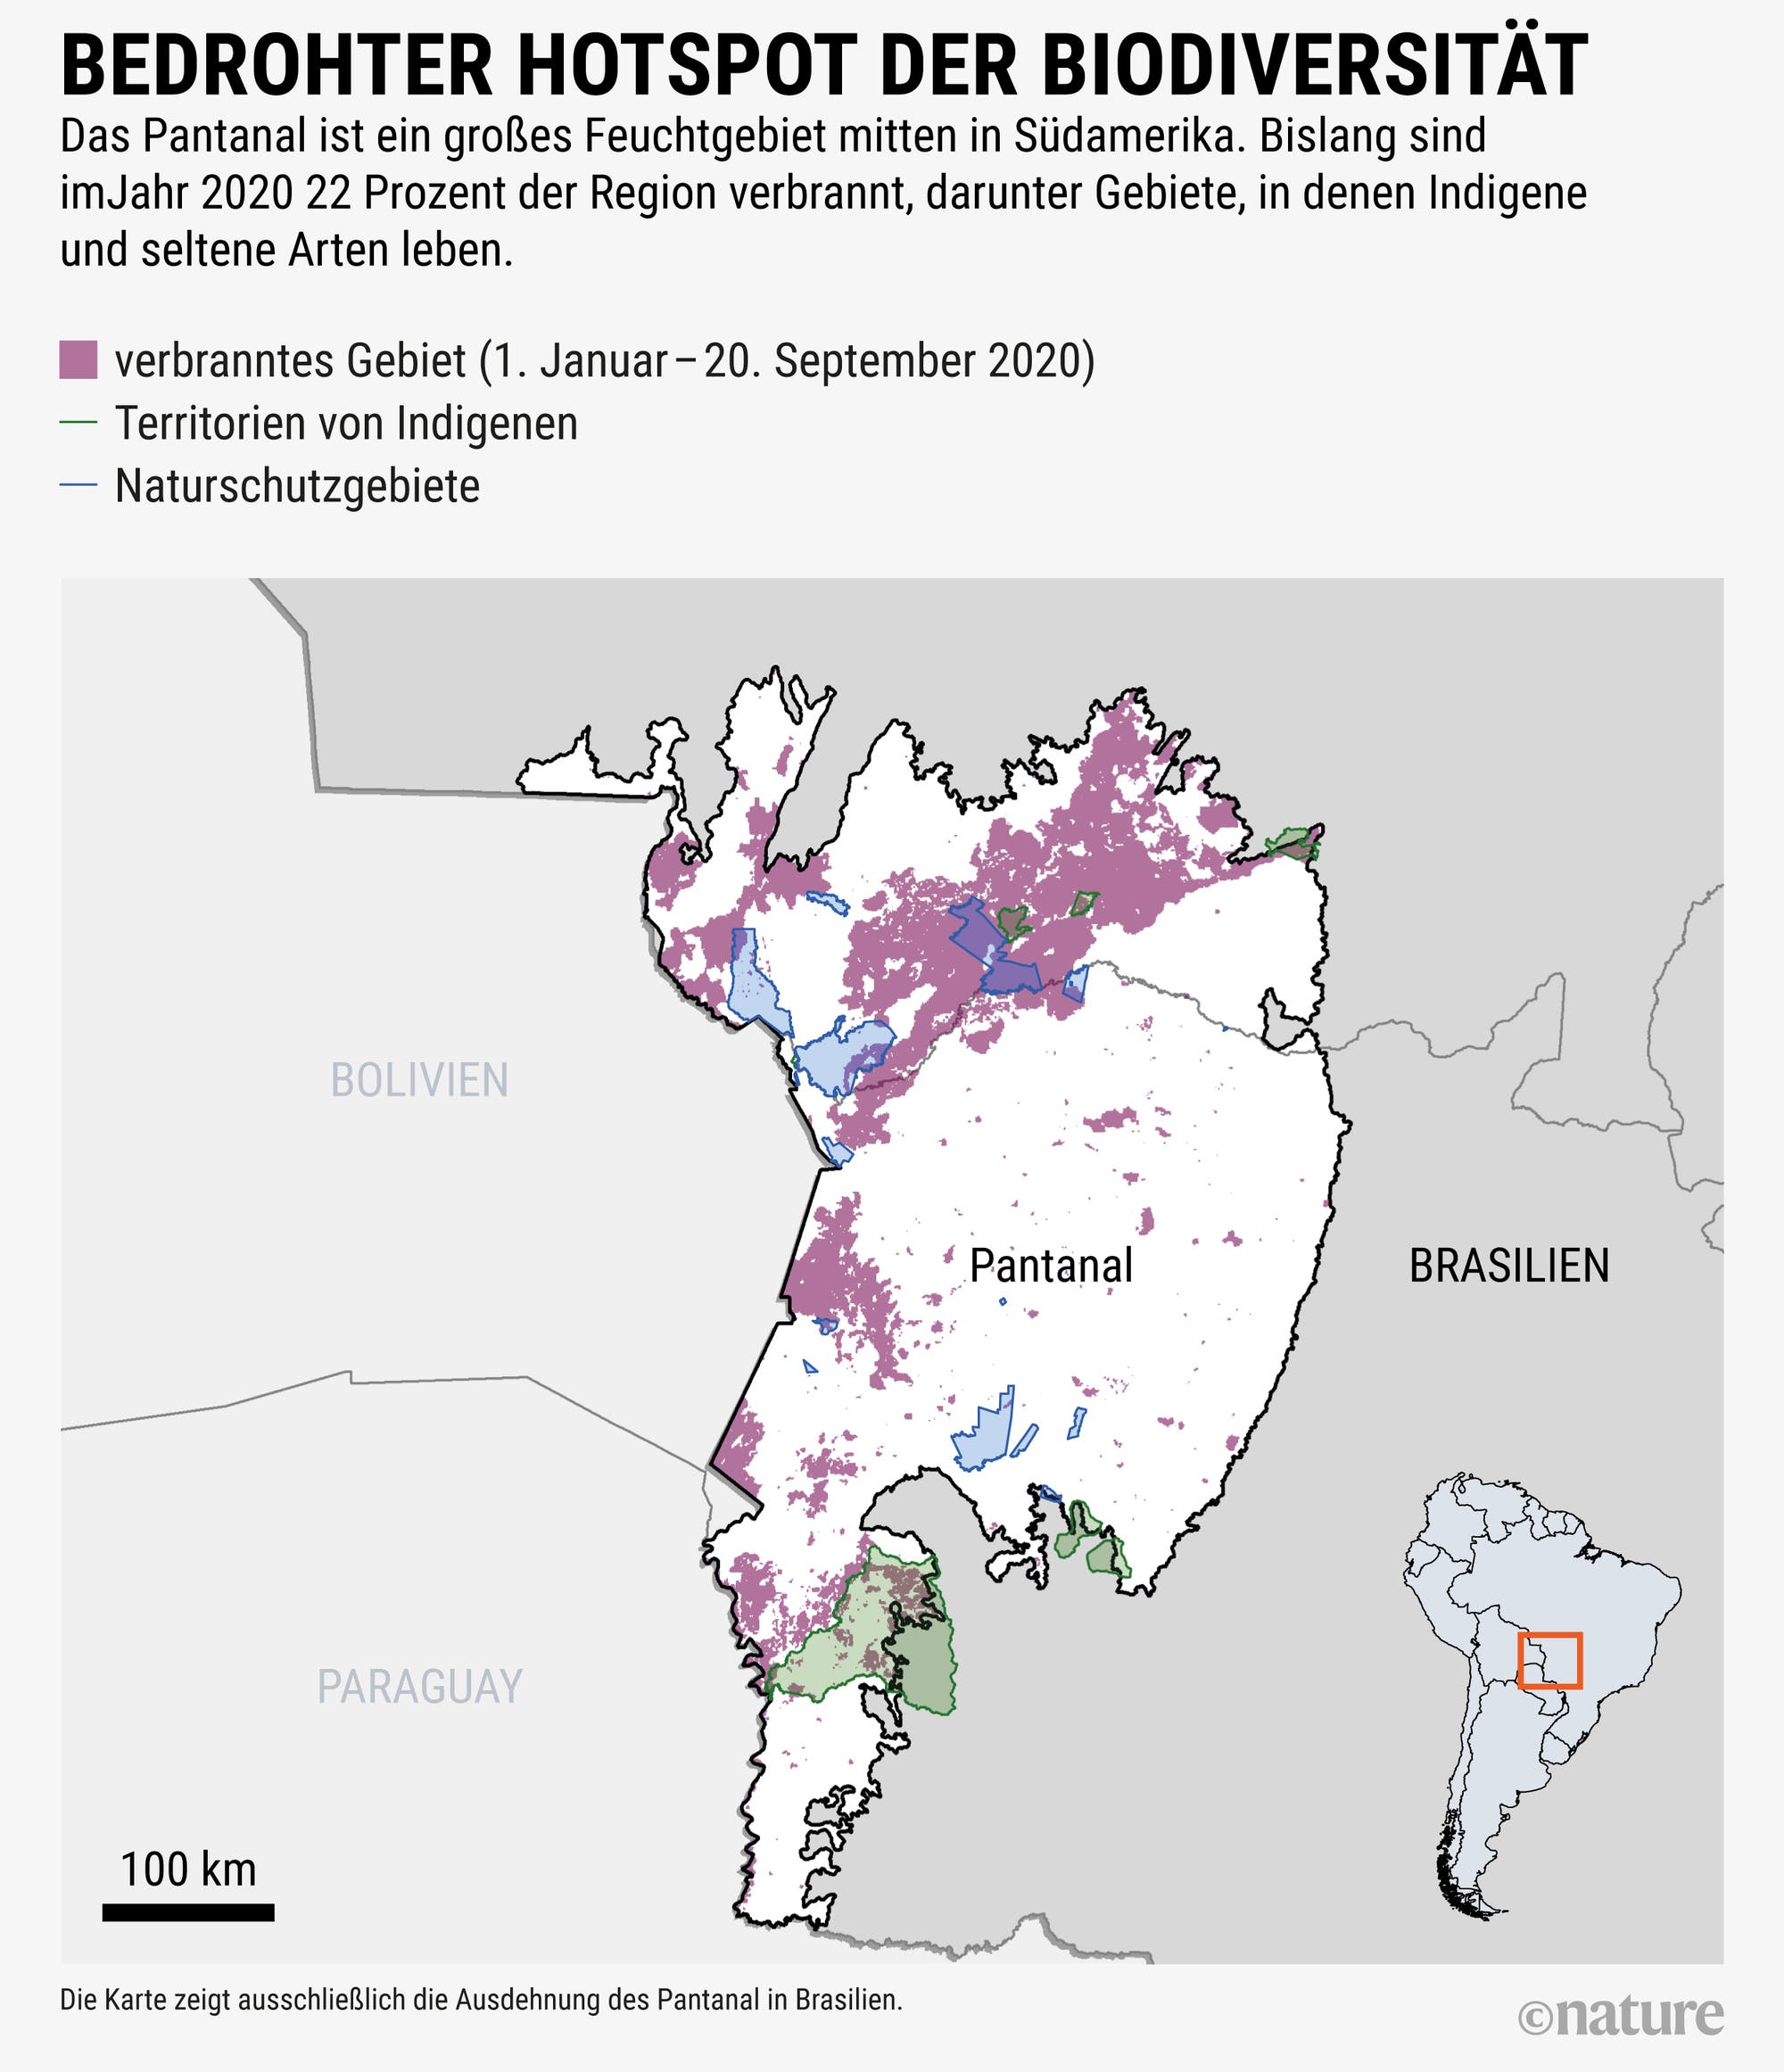 Die Karte zeigt, dass in Jahr 2020 bislang 22 Prozent des Feuchtgebiets Pantanal verbrannt sind.